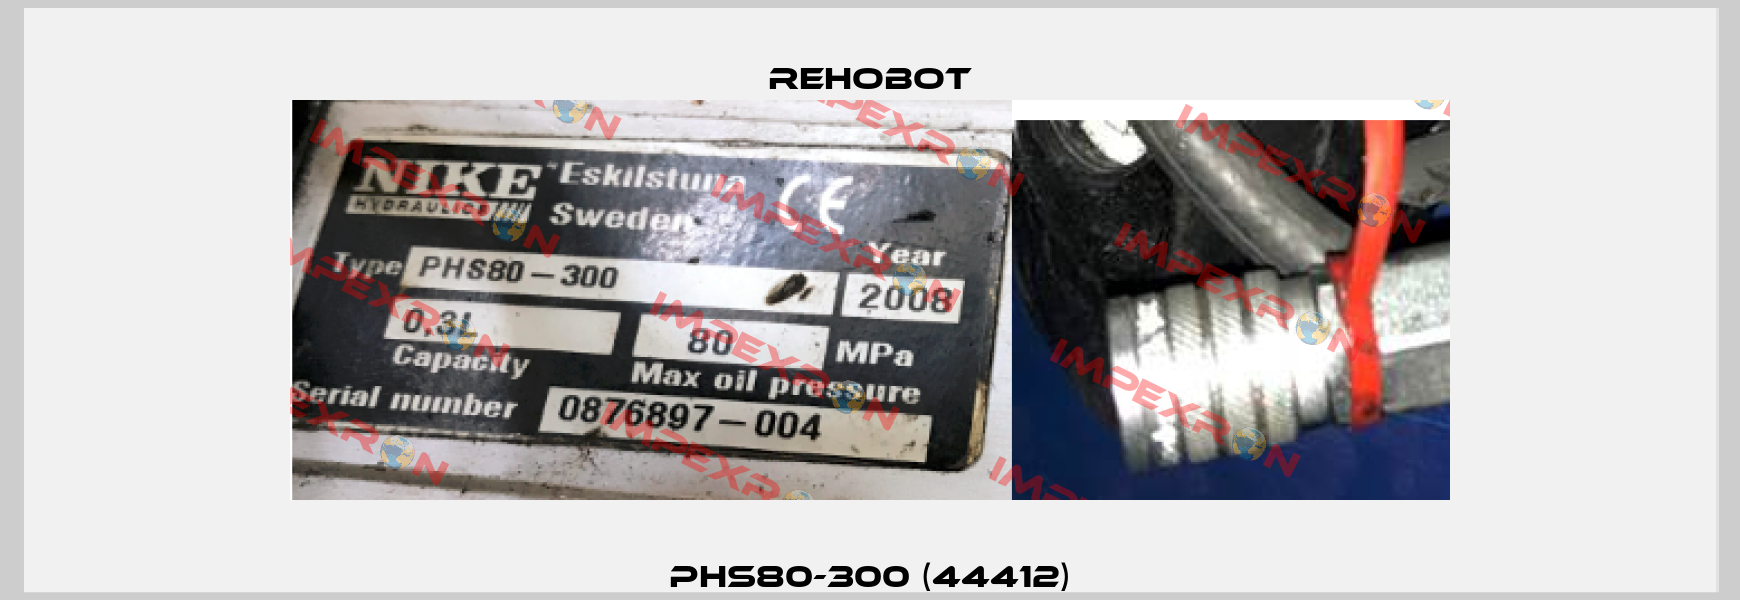 PHS80-300 (44412) Rehobot